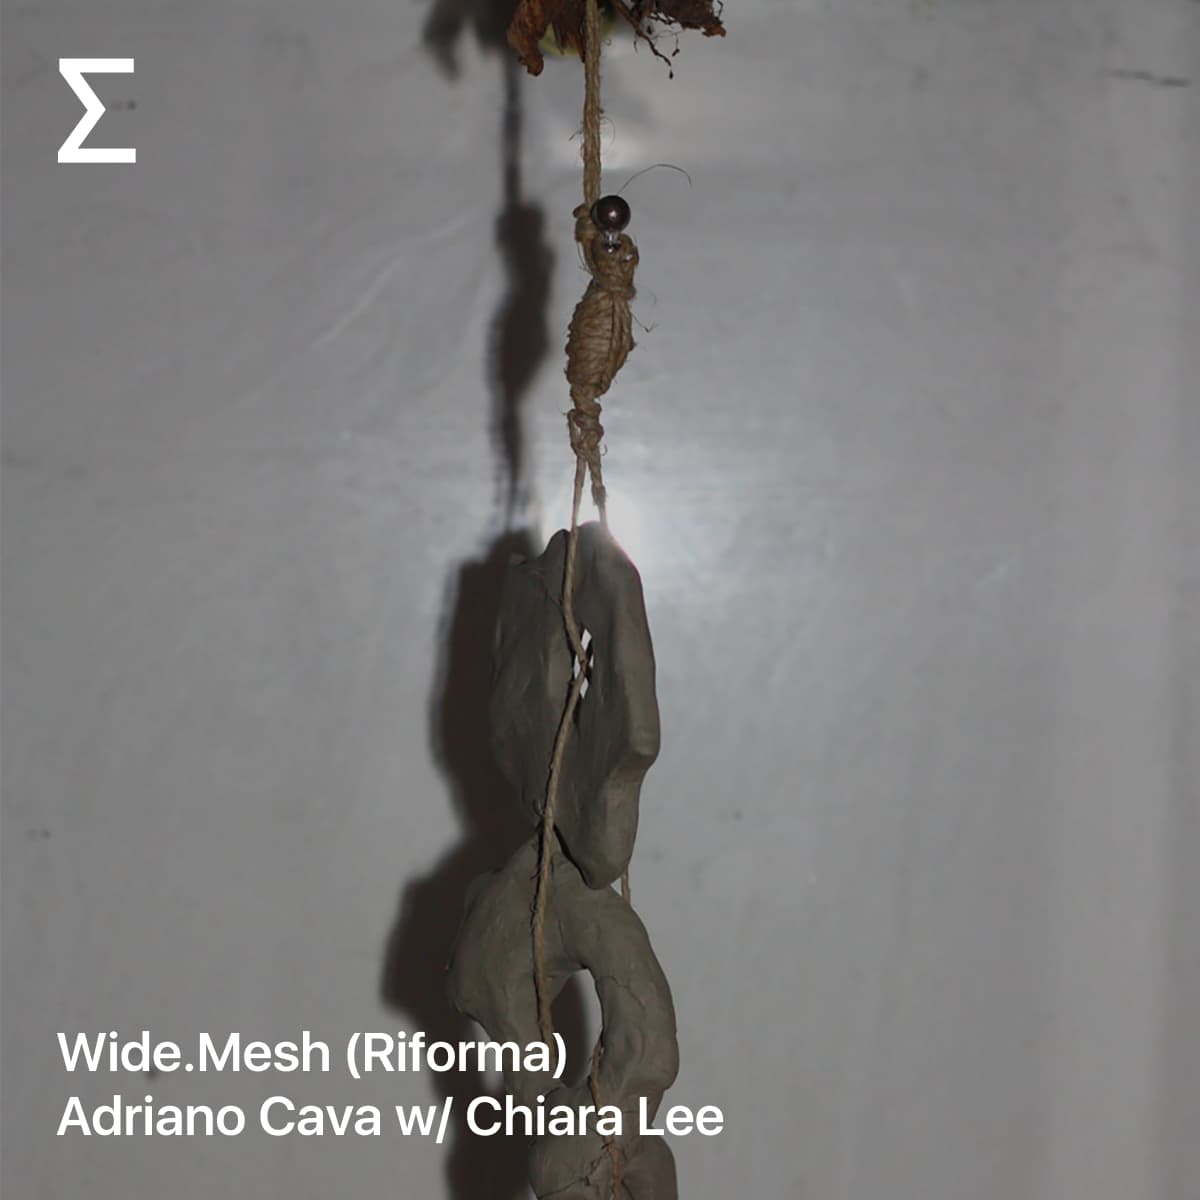 Wide.Mesh (Riforma) – Adriano Cava w/ Chiara Lee